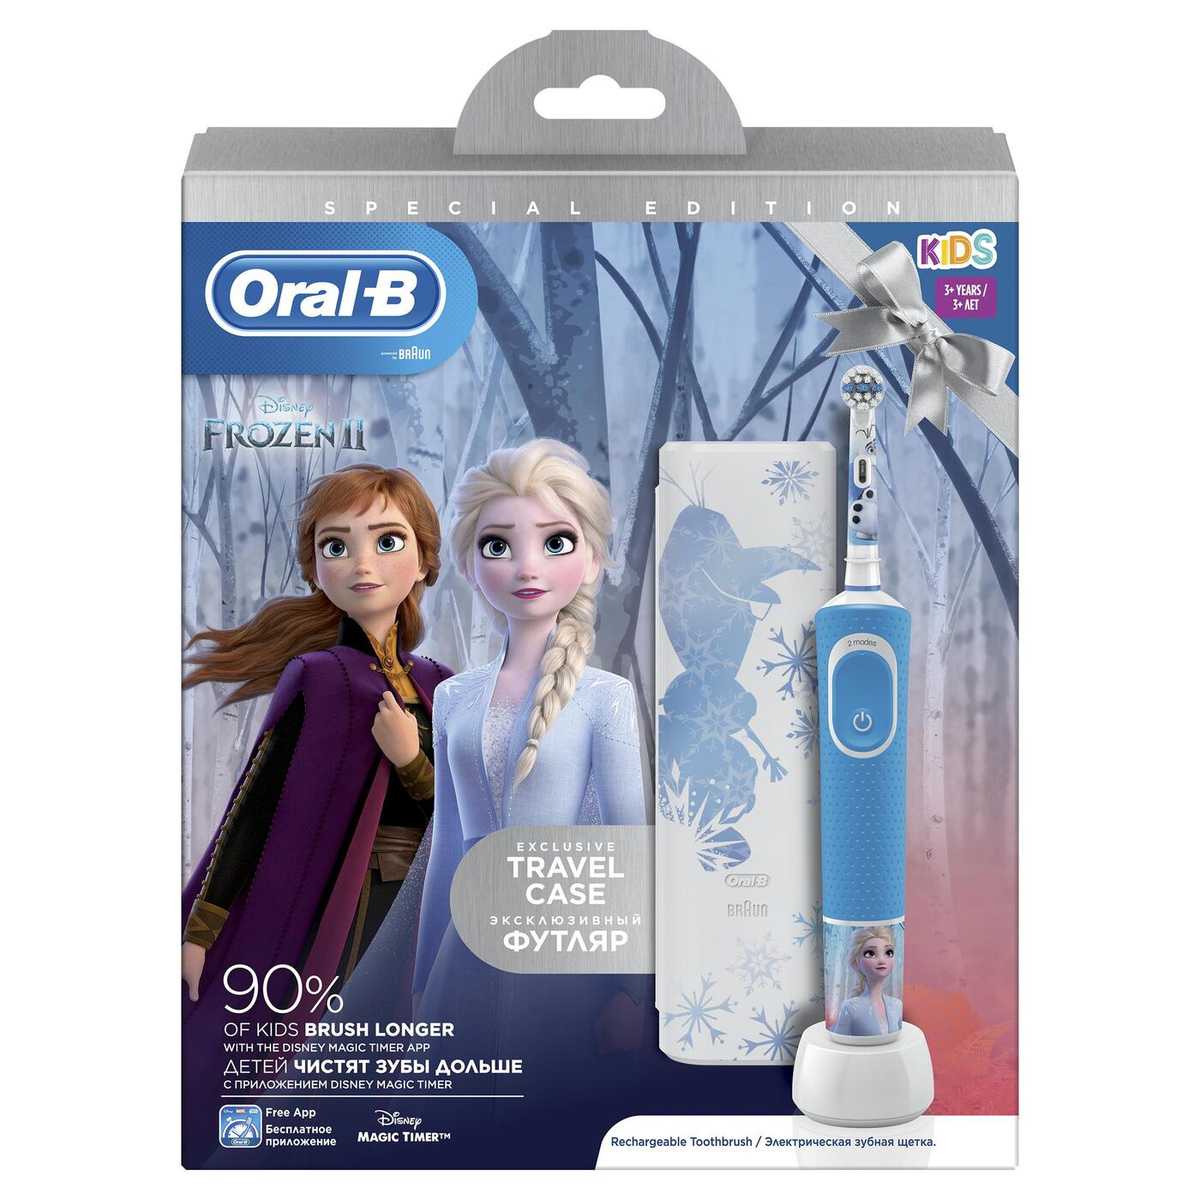 Oral-B Vitality Kids Frozen - короткий но максимально информативный обзор Для большего удобства добавлены характеристики отзывы и видео